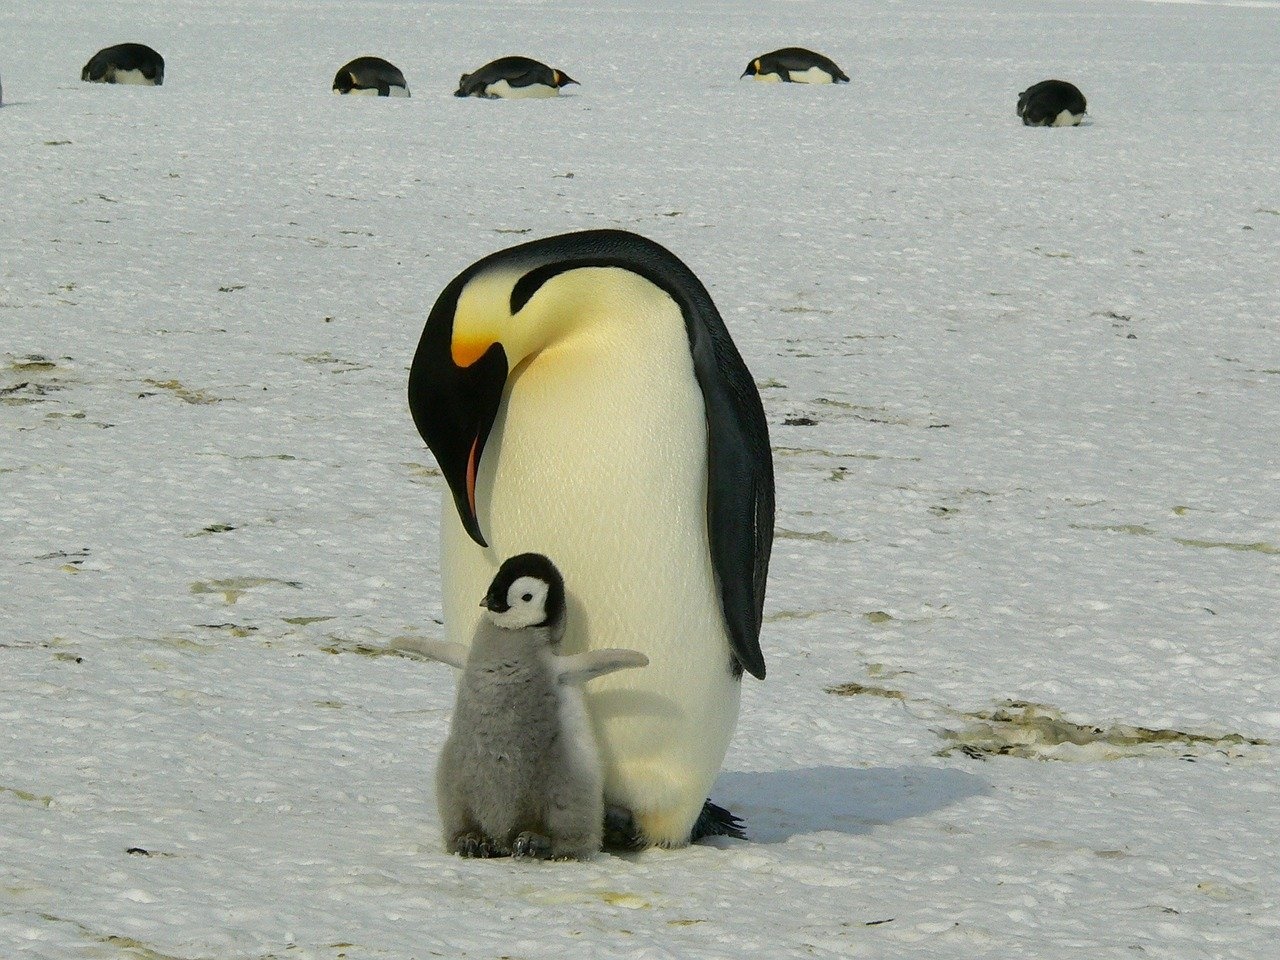 Pingviiniemo ja poikanen